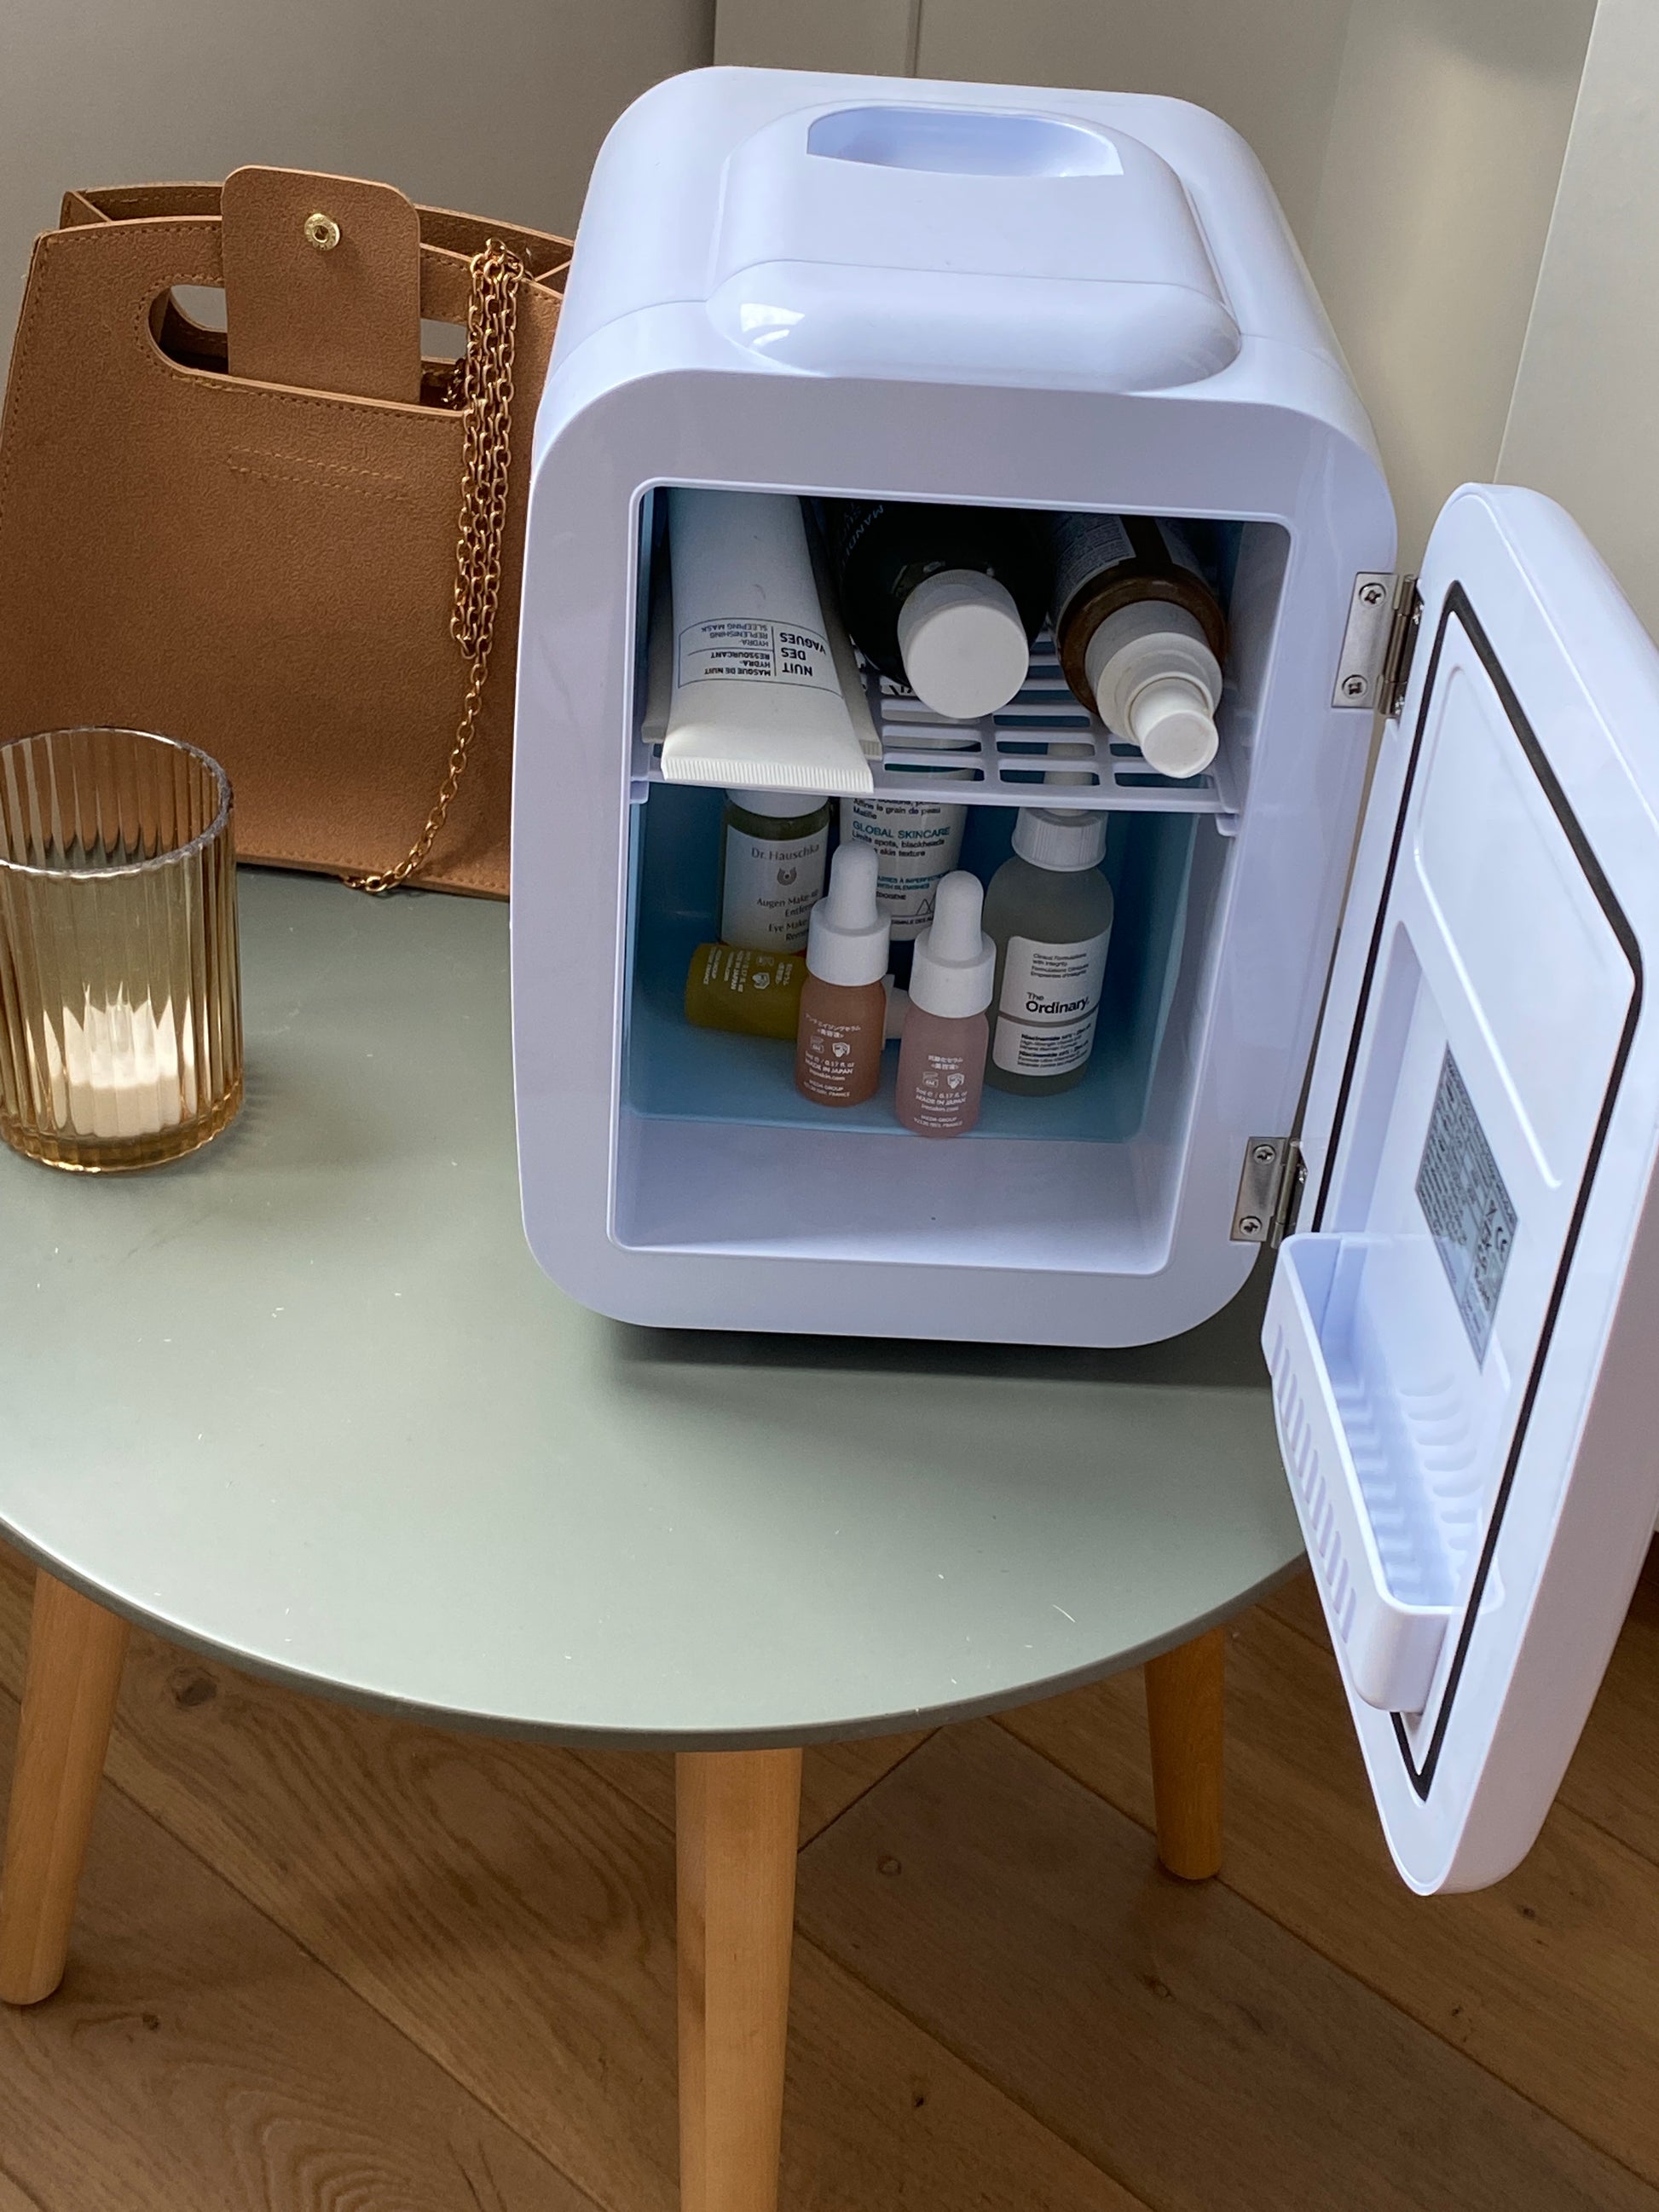 Réfrigérateur de Beauty pour soins de la peau - Mini réfrigérateur portable  - Minibar